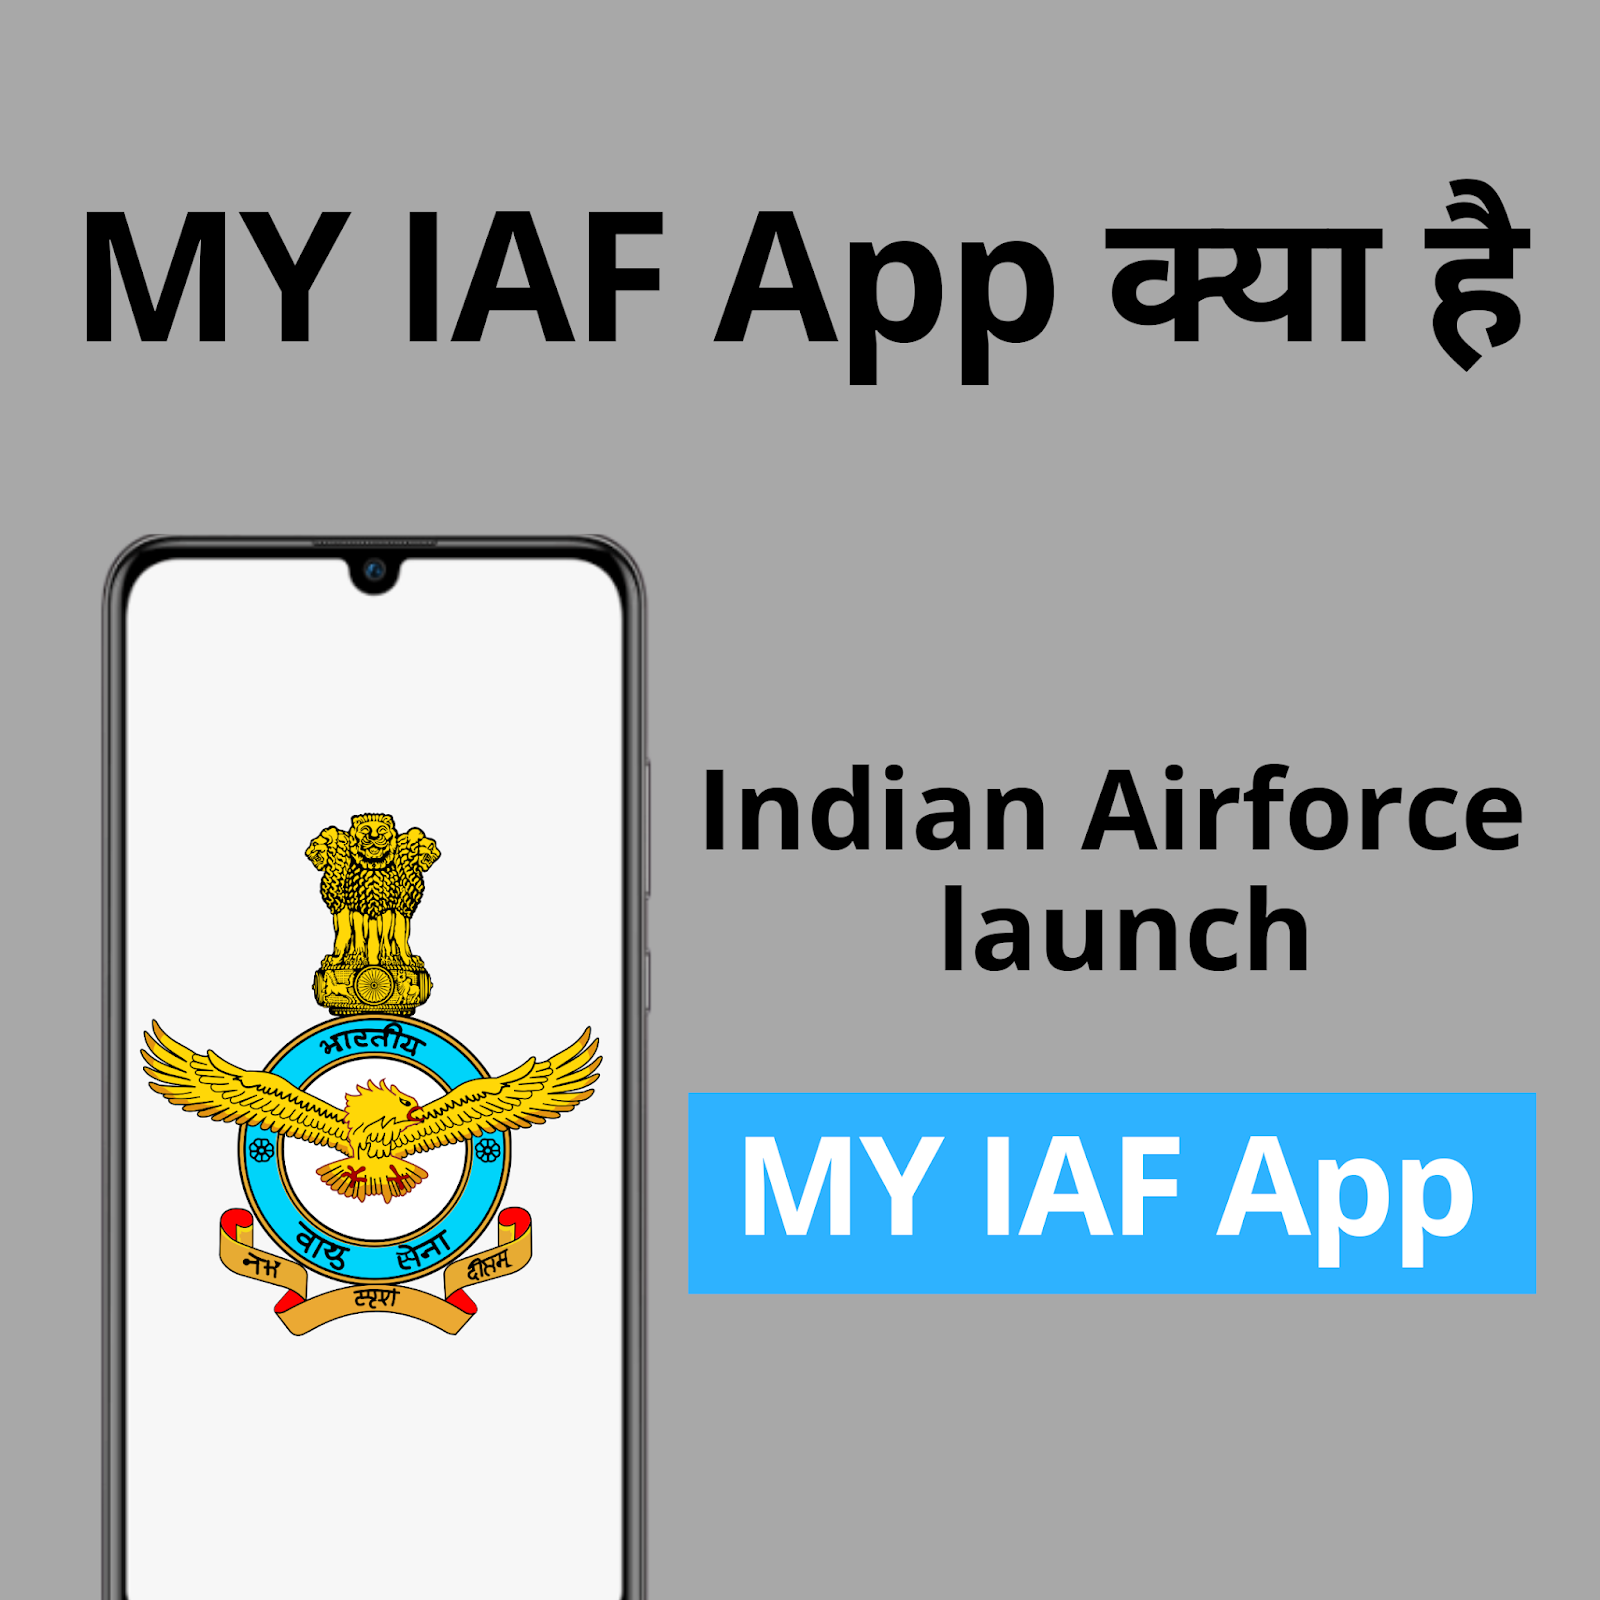 My IAF App क्या है